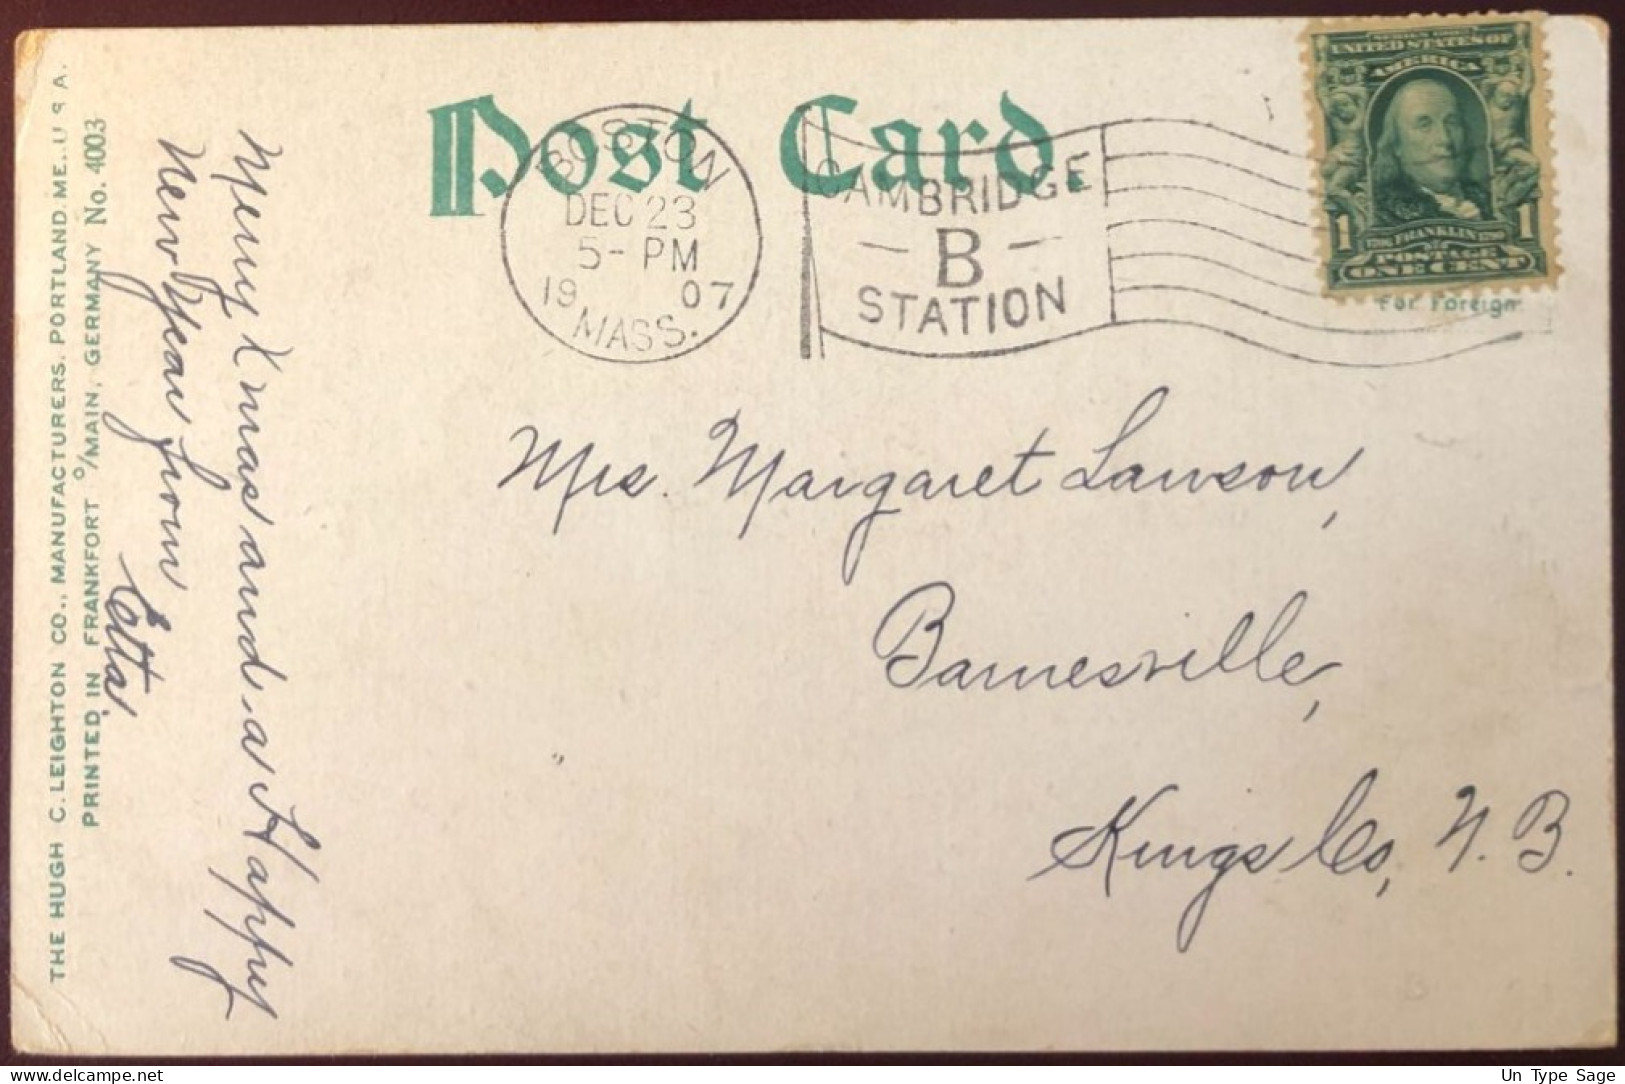 Etats-Unis,  Divers Sur Carte, Cachet Boston, MASS 23.12.1907 / CAMBRIDGE B STATION - (B1642) - Marcofilie